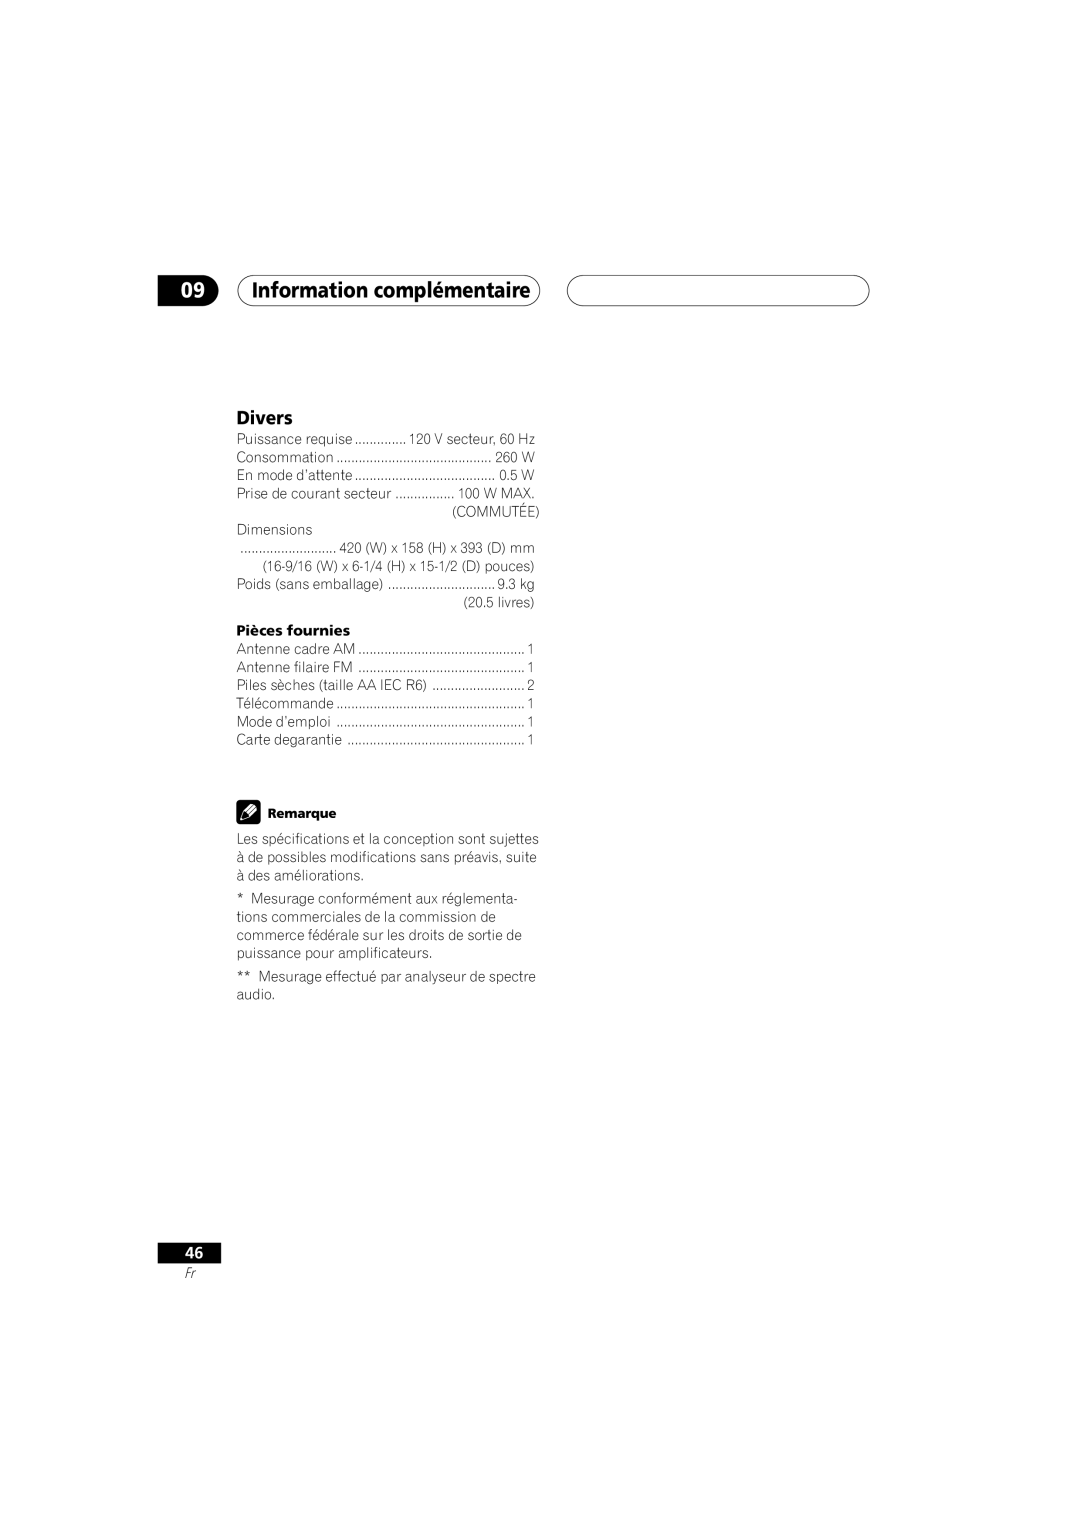 Pioneer D514, VSX-D414 manual 09Information complémentaire, Divers 